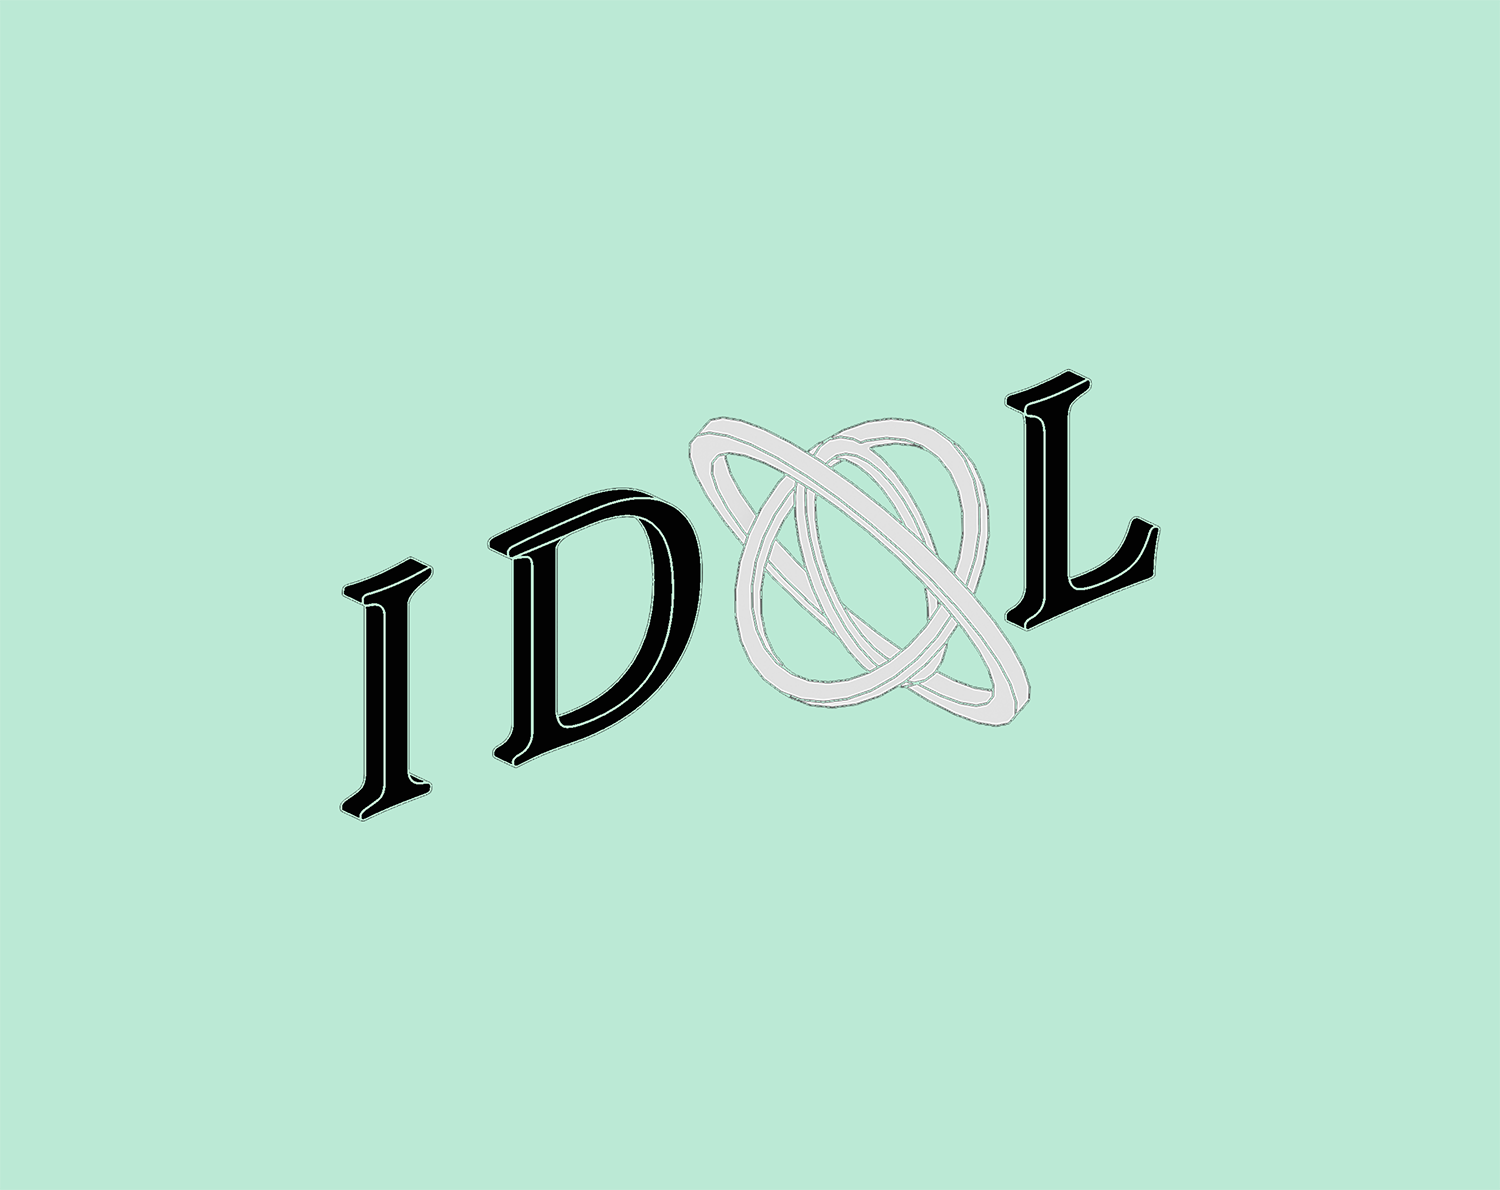 IDOL - Entry 2